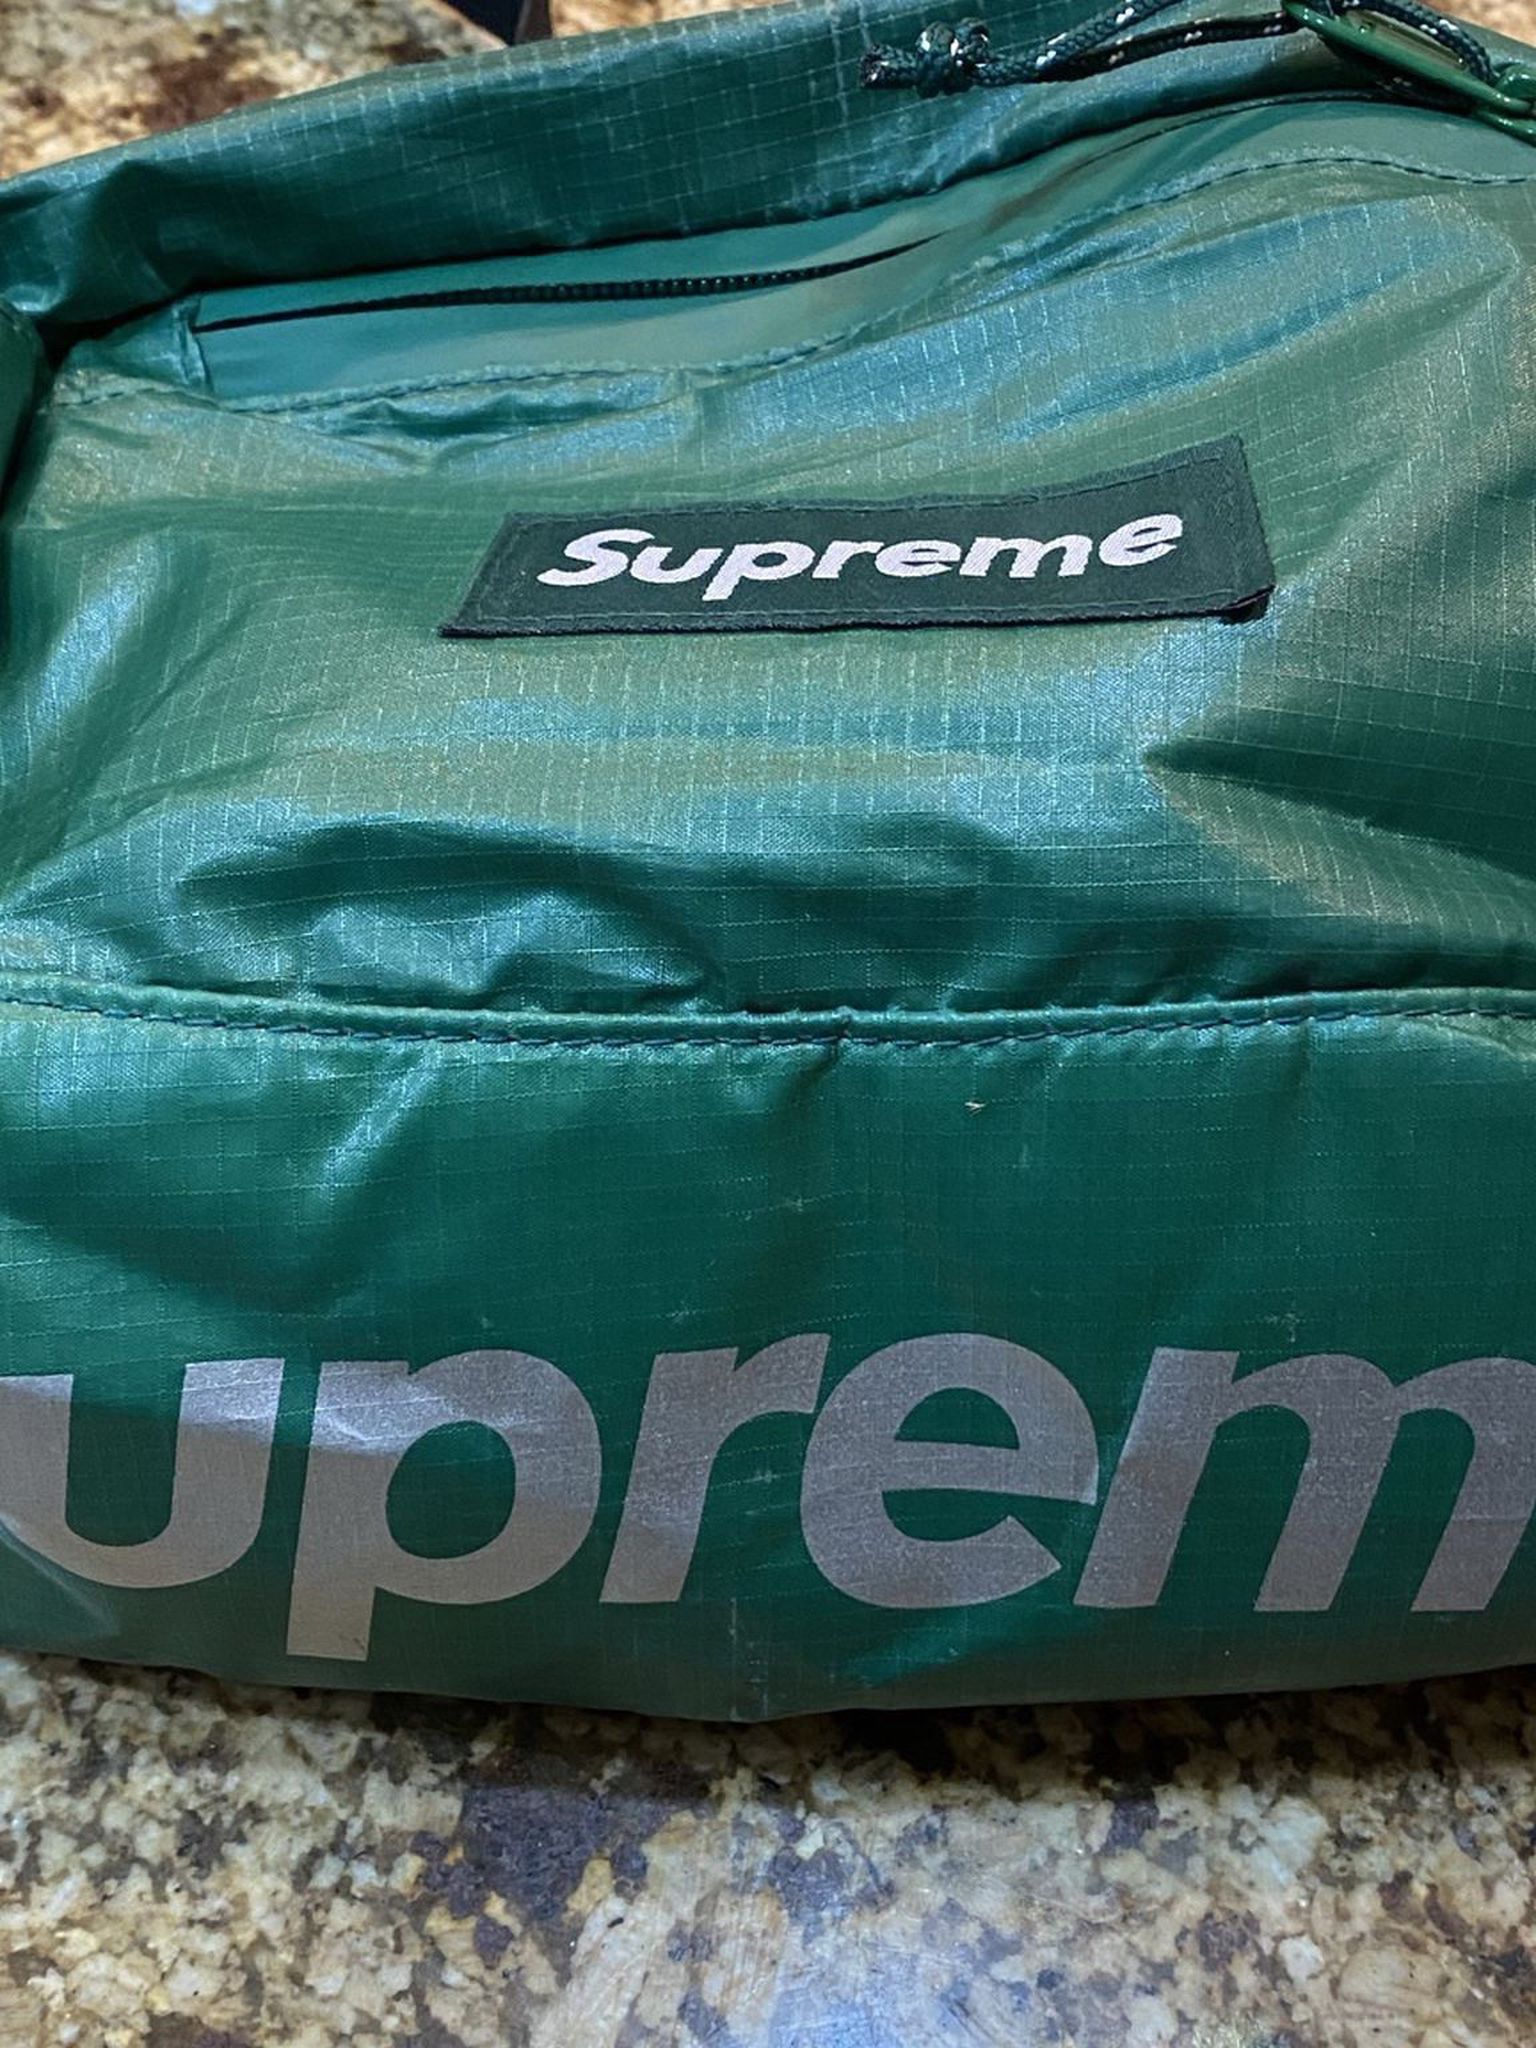 Supreme Waist Bag - $80